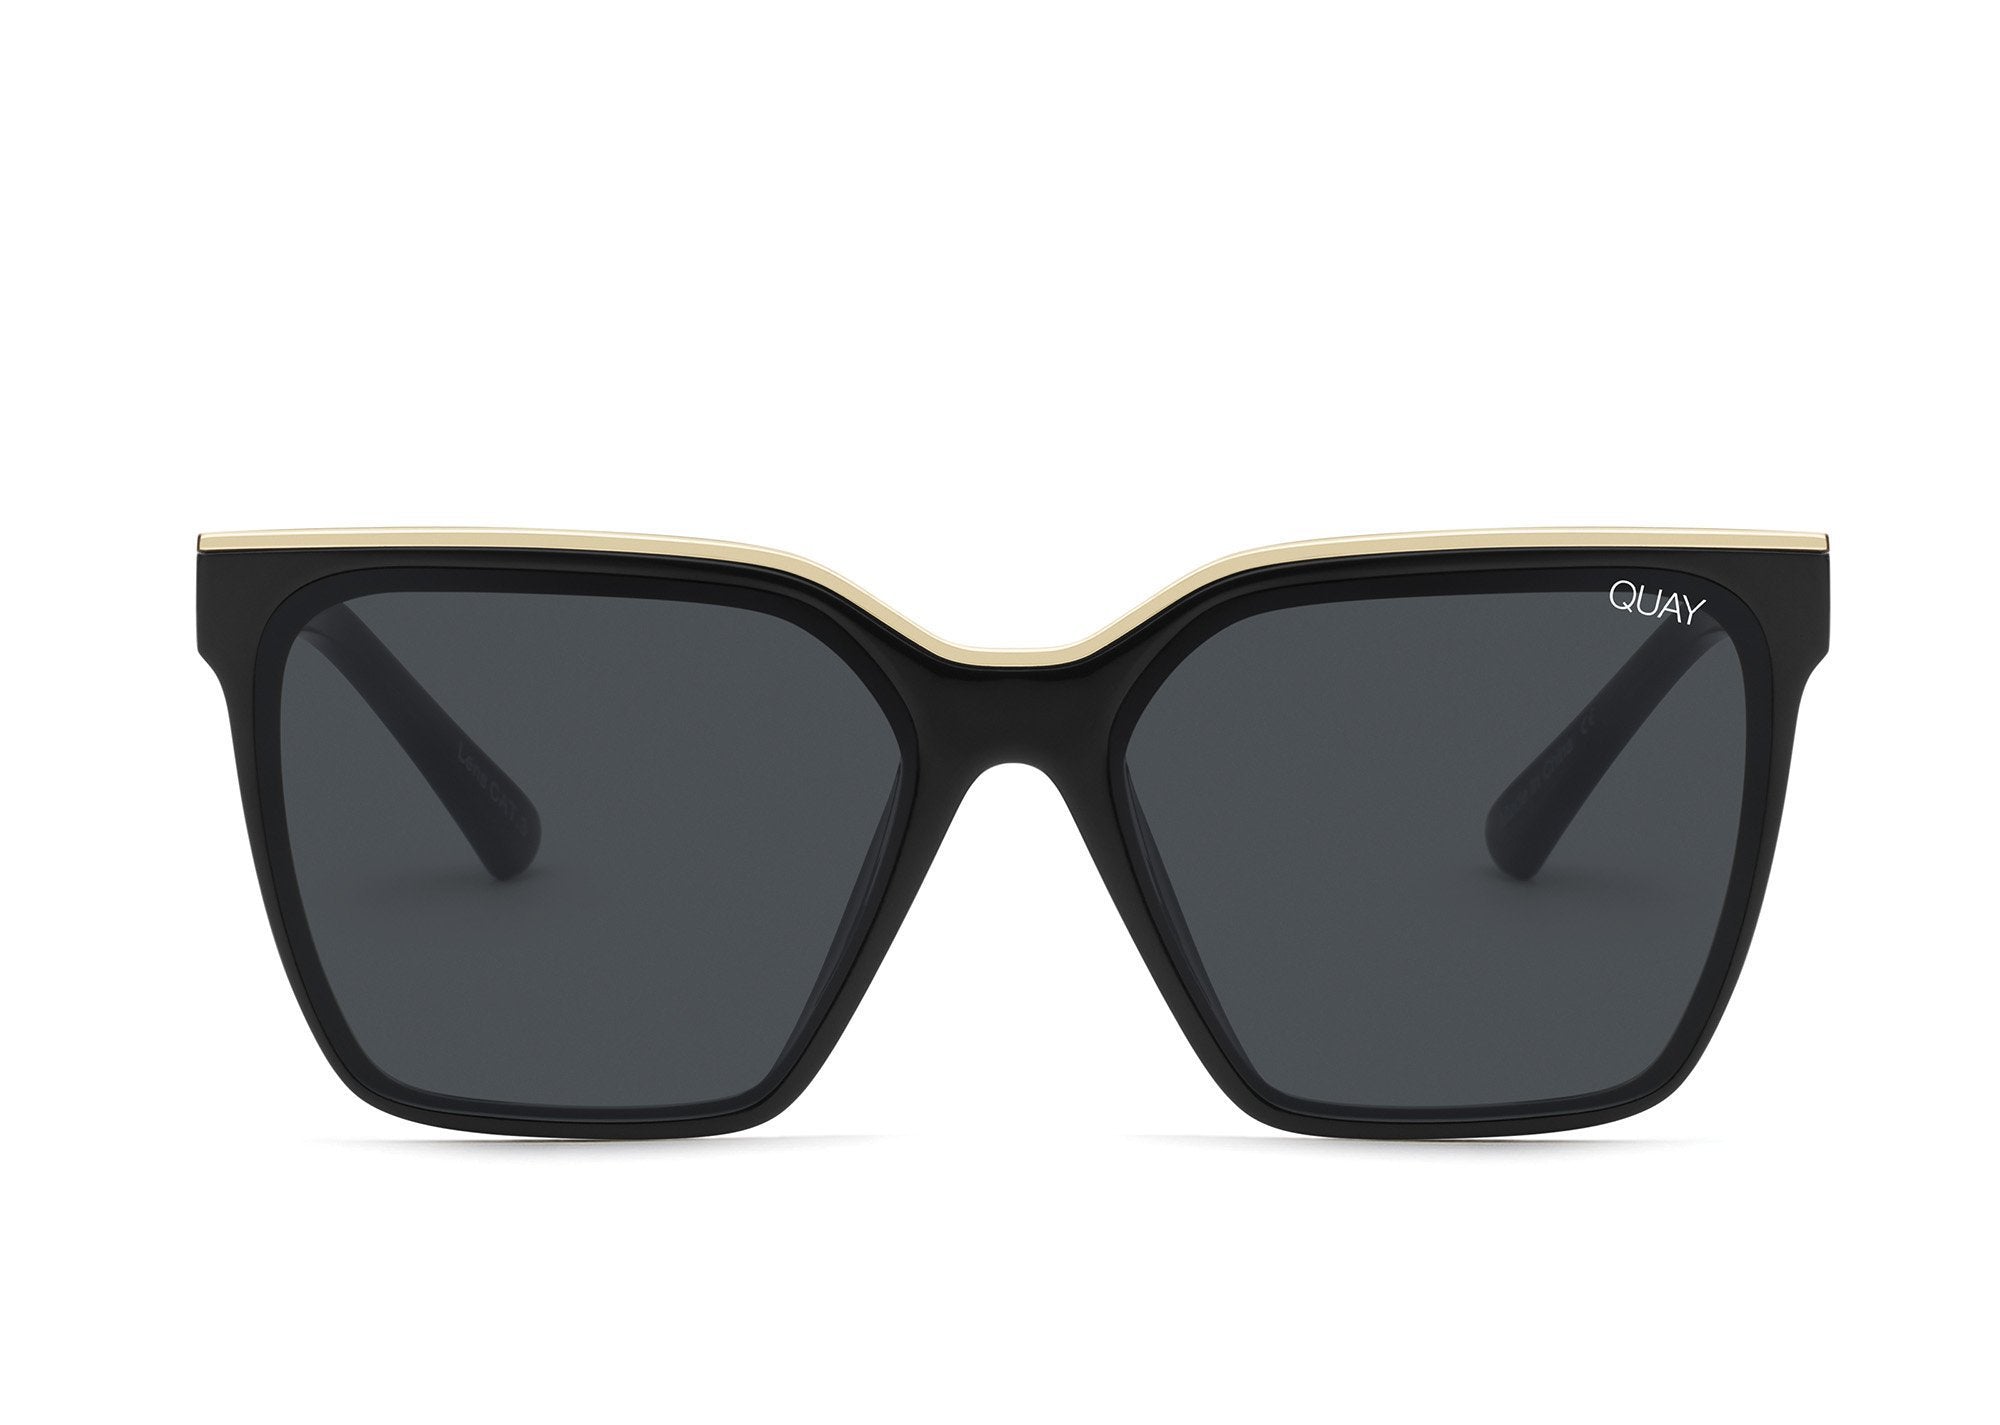 QUAY LEVEL UP black gold/smoke square sunglasses - PresenceConcept.com